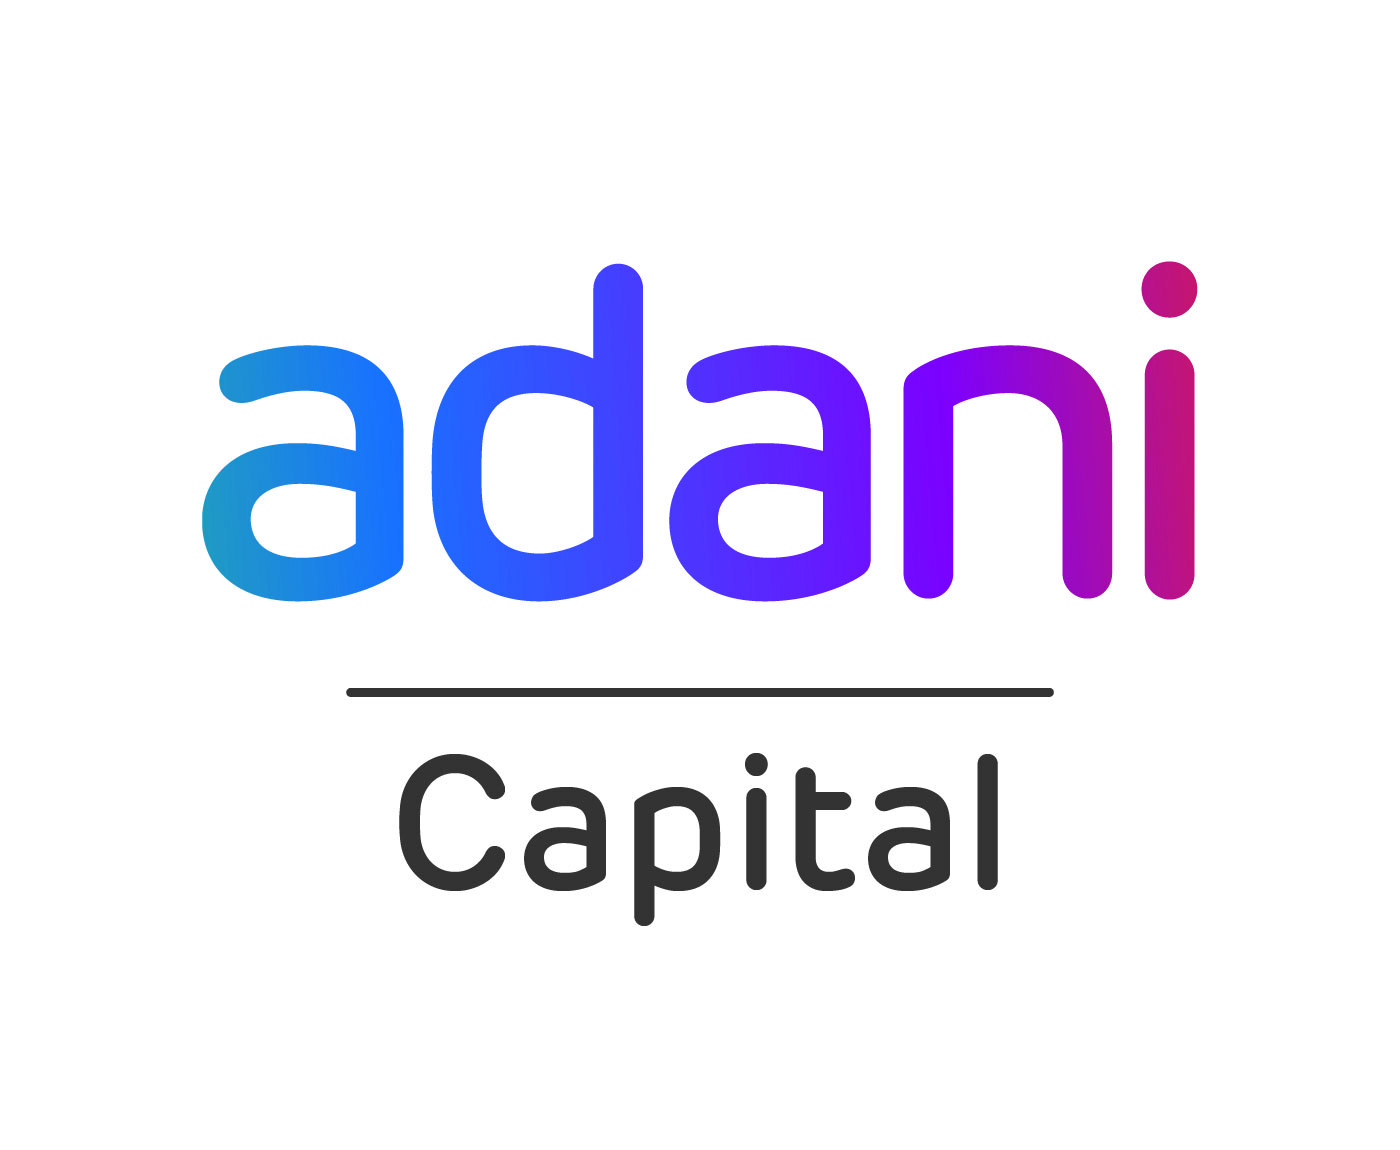 Adani Capital Pvt. Ltd.